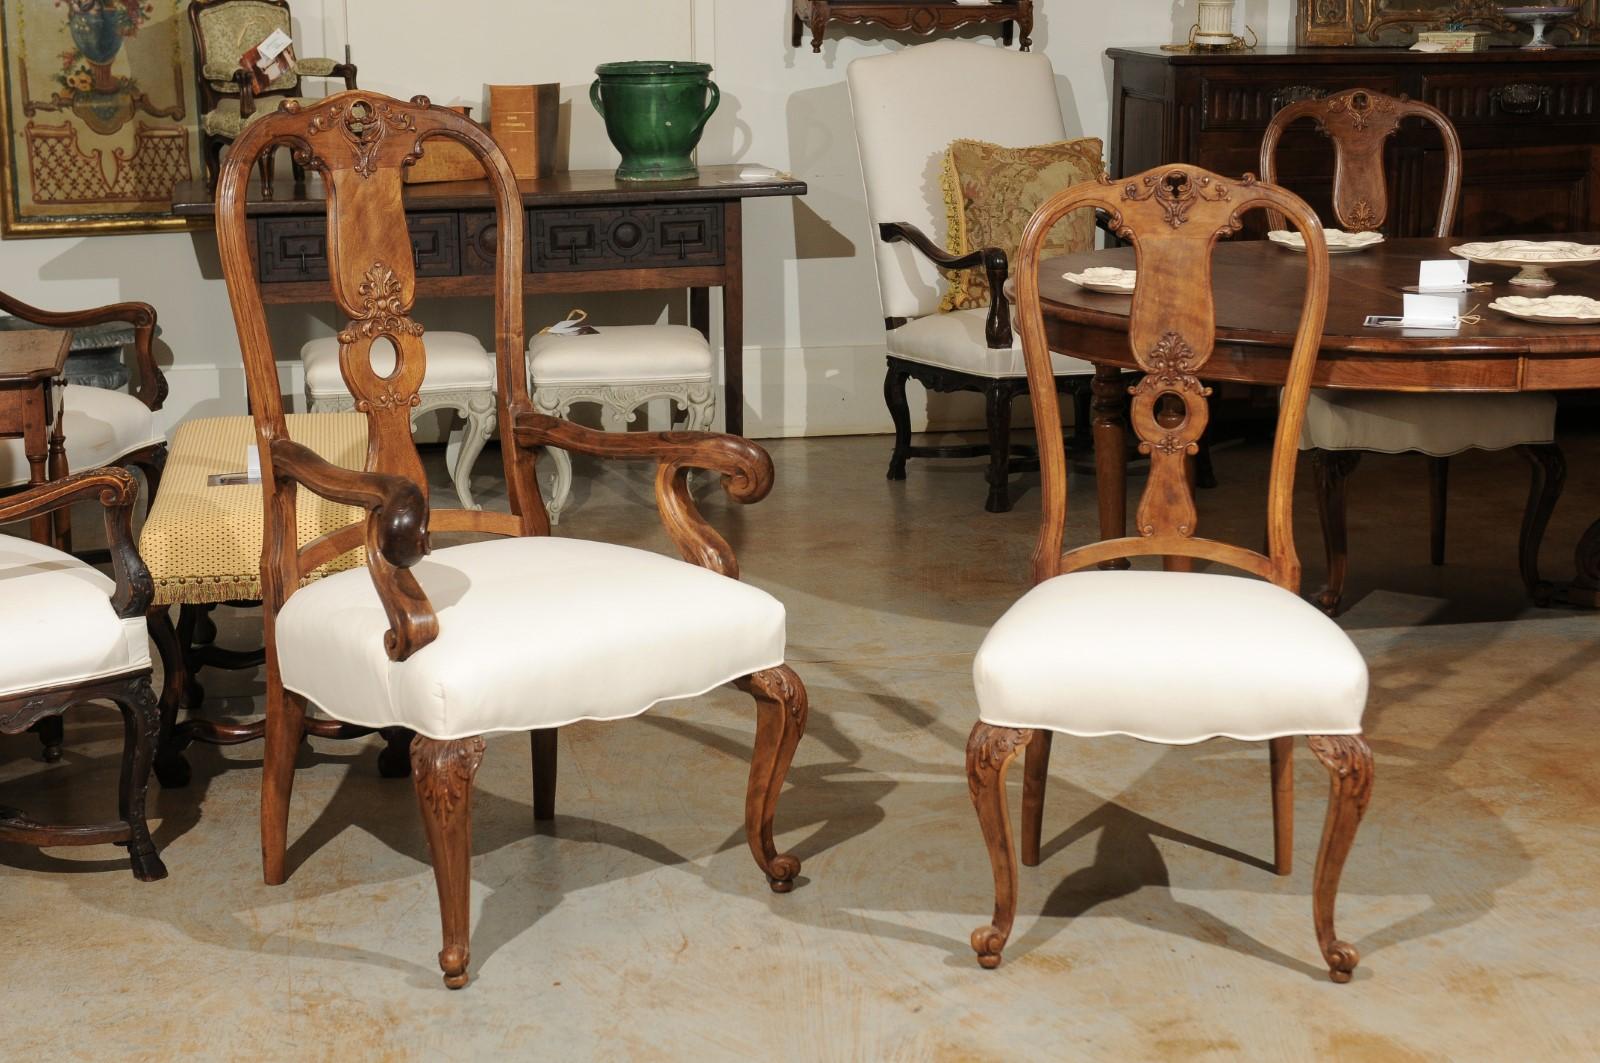 Un ensemble de huit chaises de salle à manger en noyer de style rococo français du 19ème siècle, avec des éclisses sculptées et percées, des pieds cabriole et des sièges nouvellement tapissés. Cet ensemble exquis de huit chaises de salle à manger